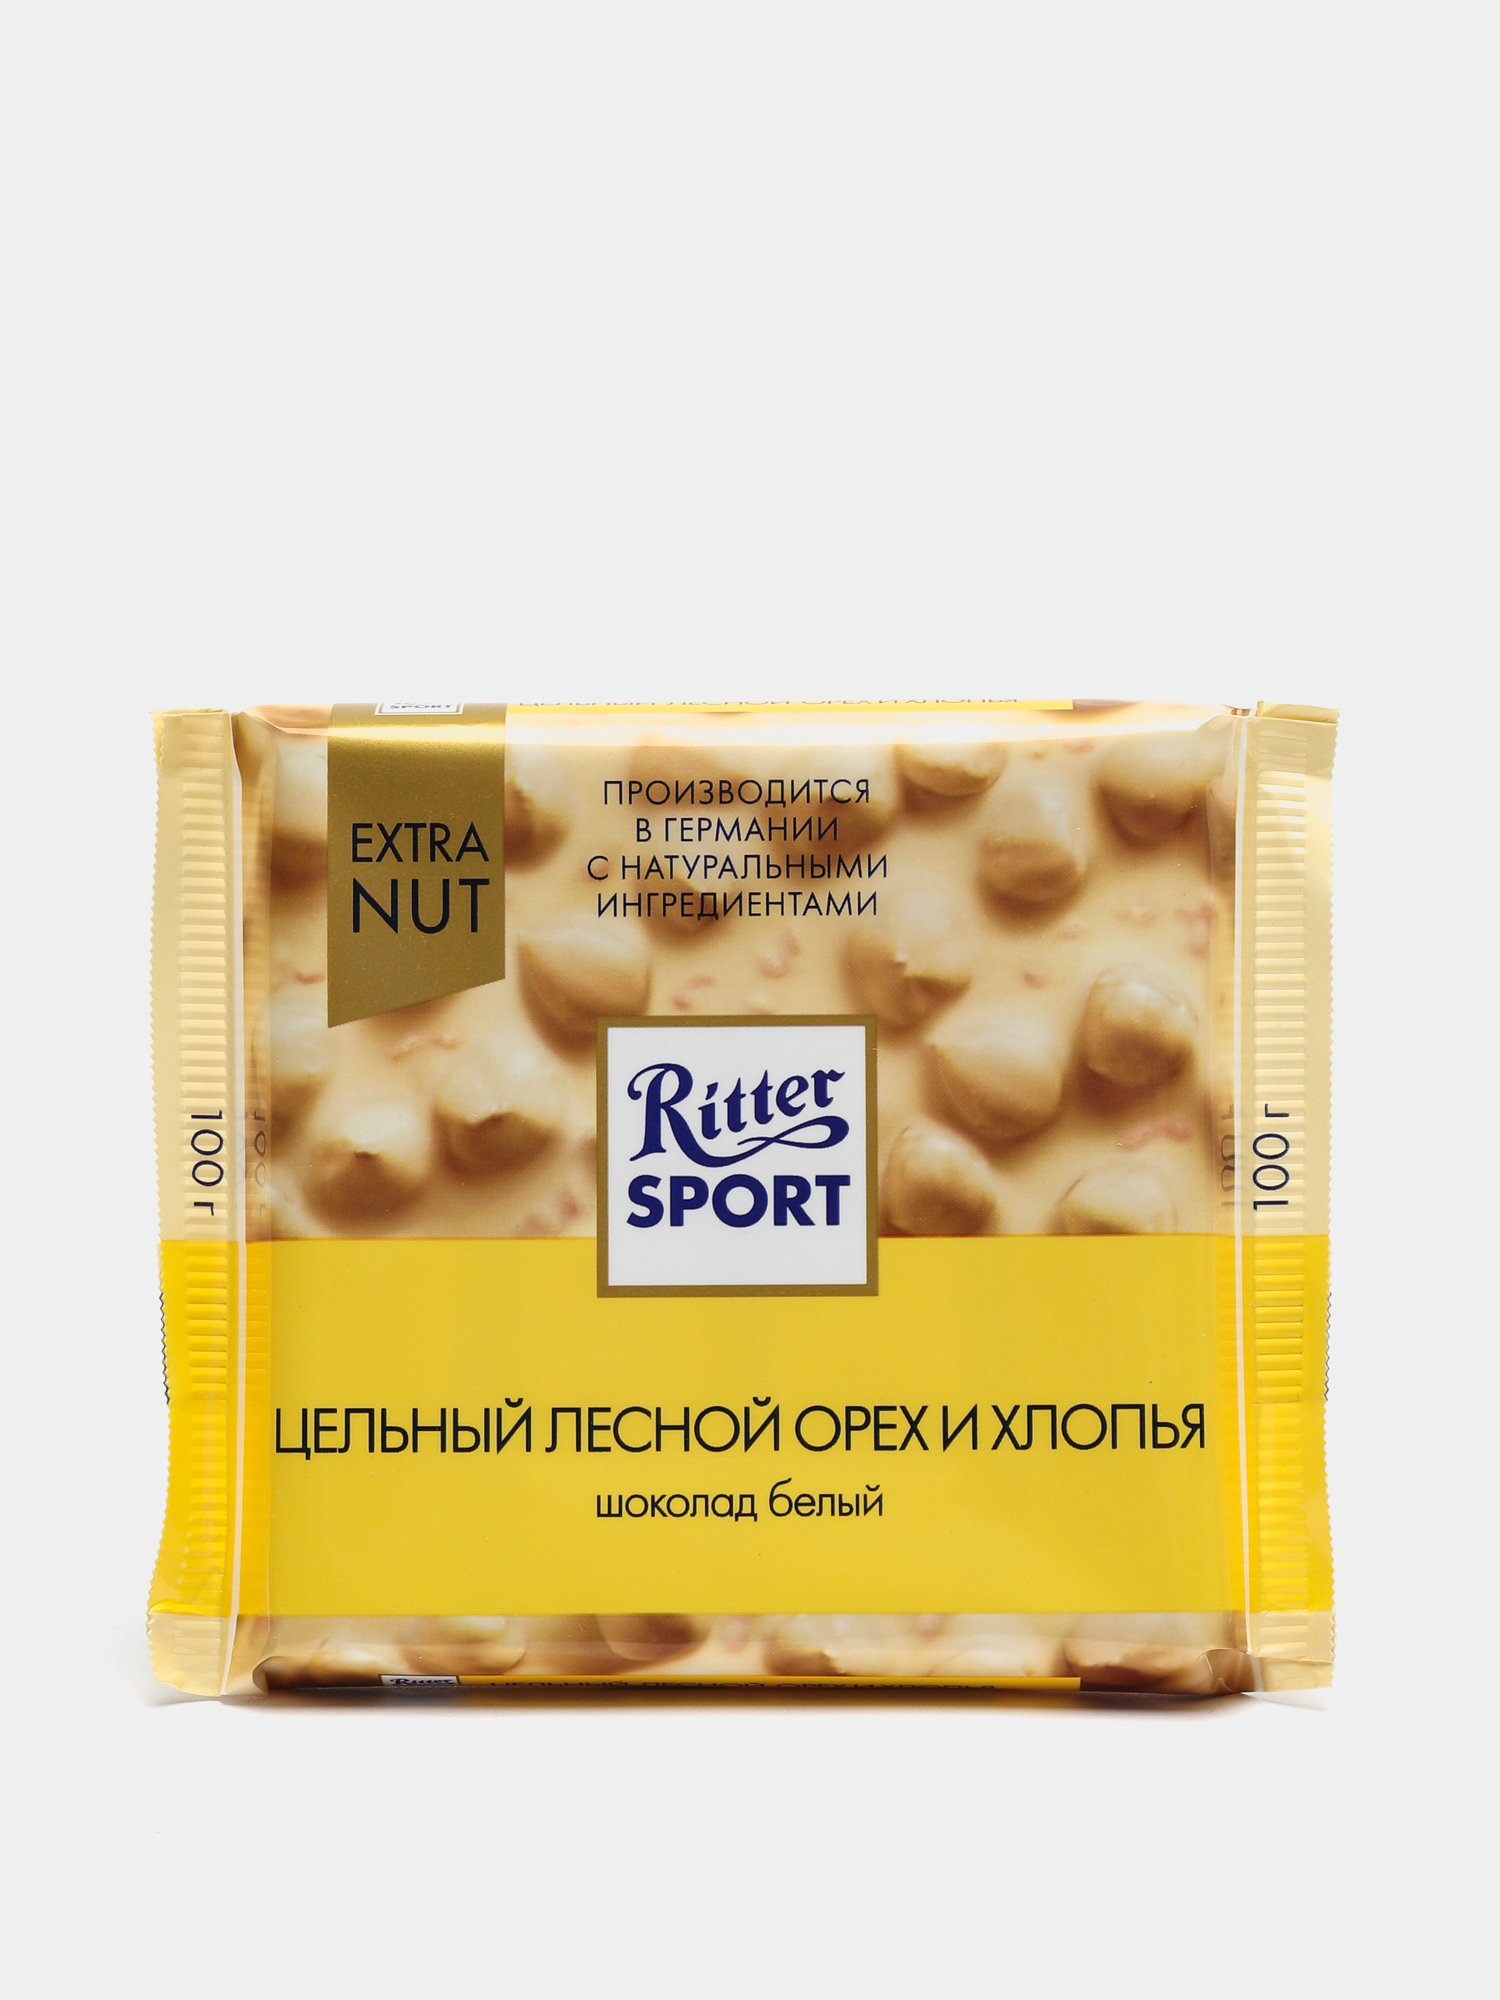 Шоколад Ritter Sport цельный Лесной орех и хлопья белый 100 г